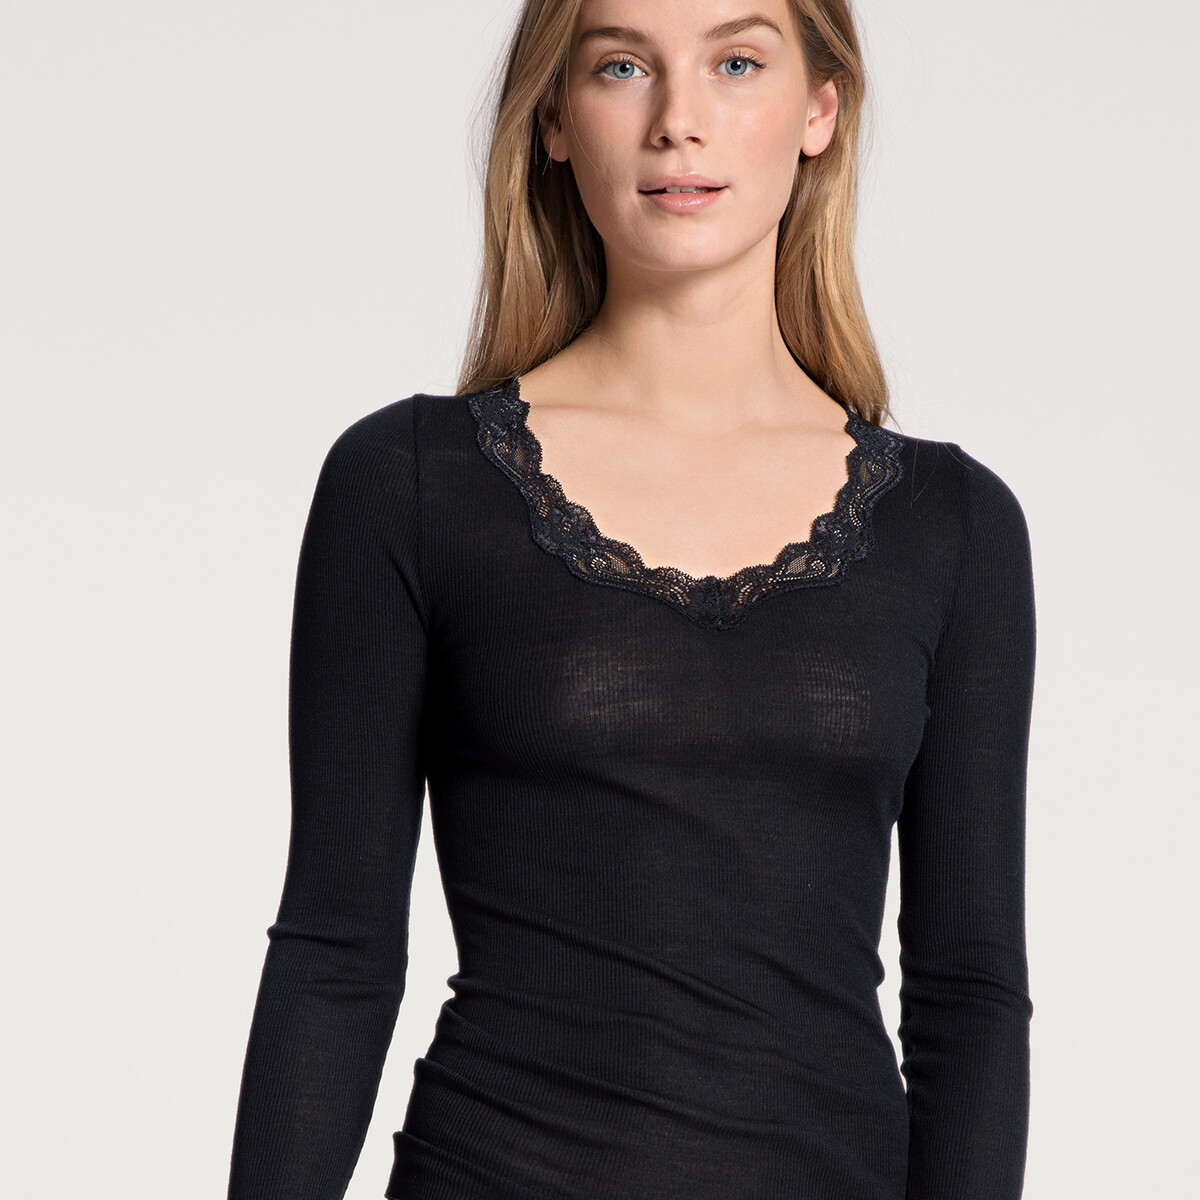 Calida Bluse, Farbe: Schwarz, Größe: S, Damen von Calida